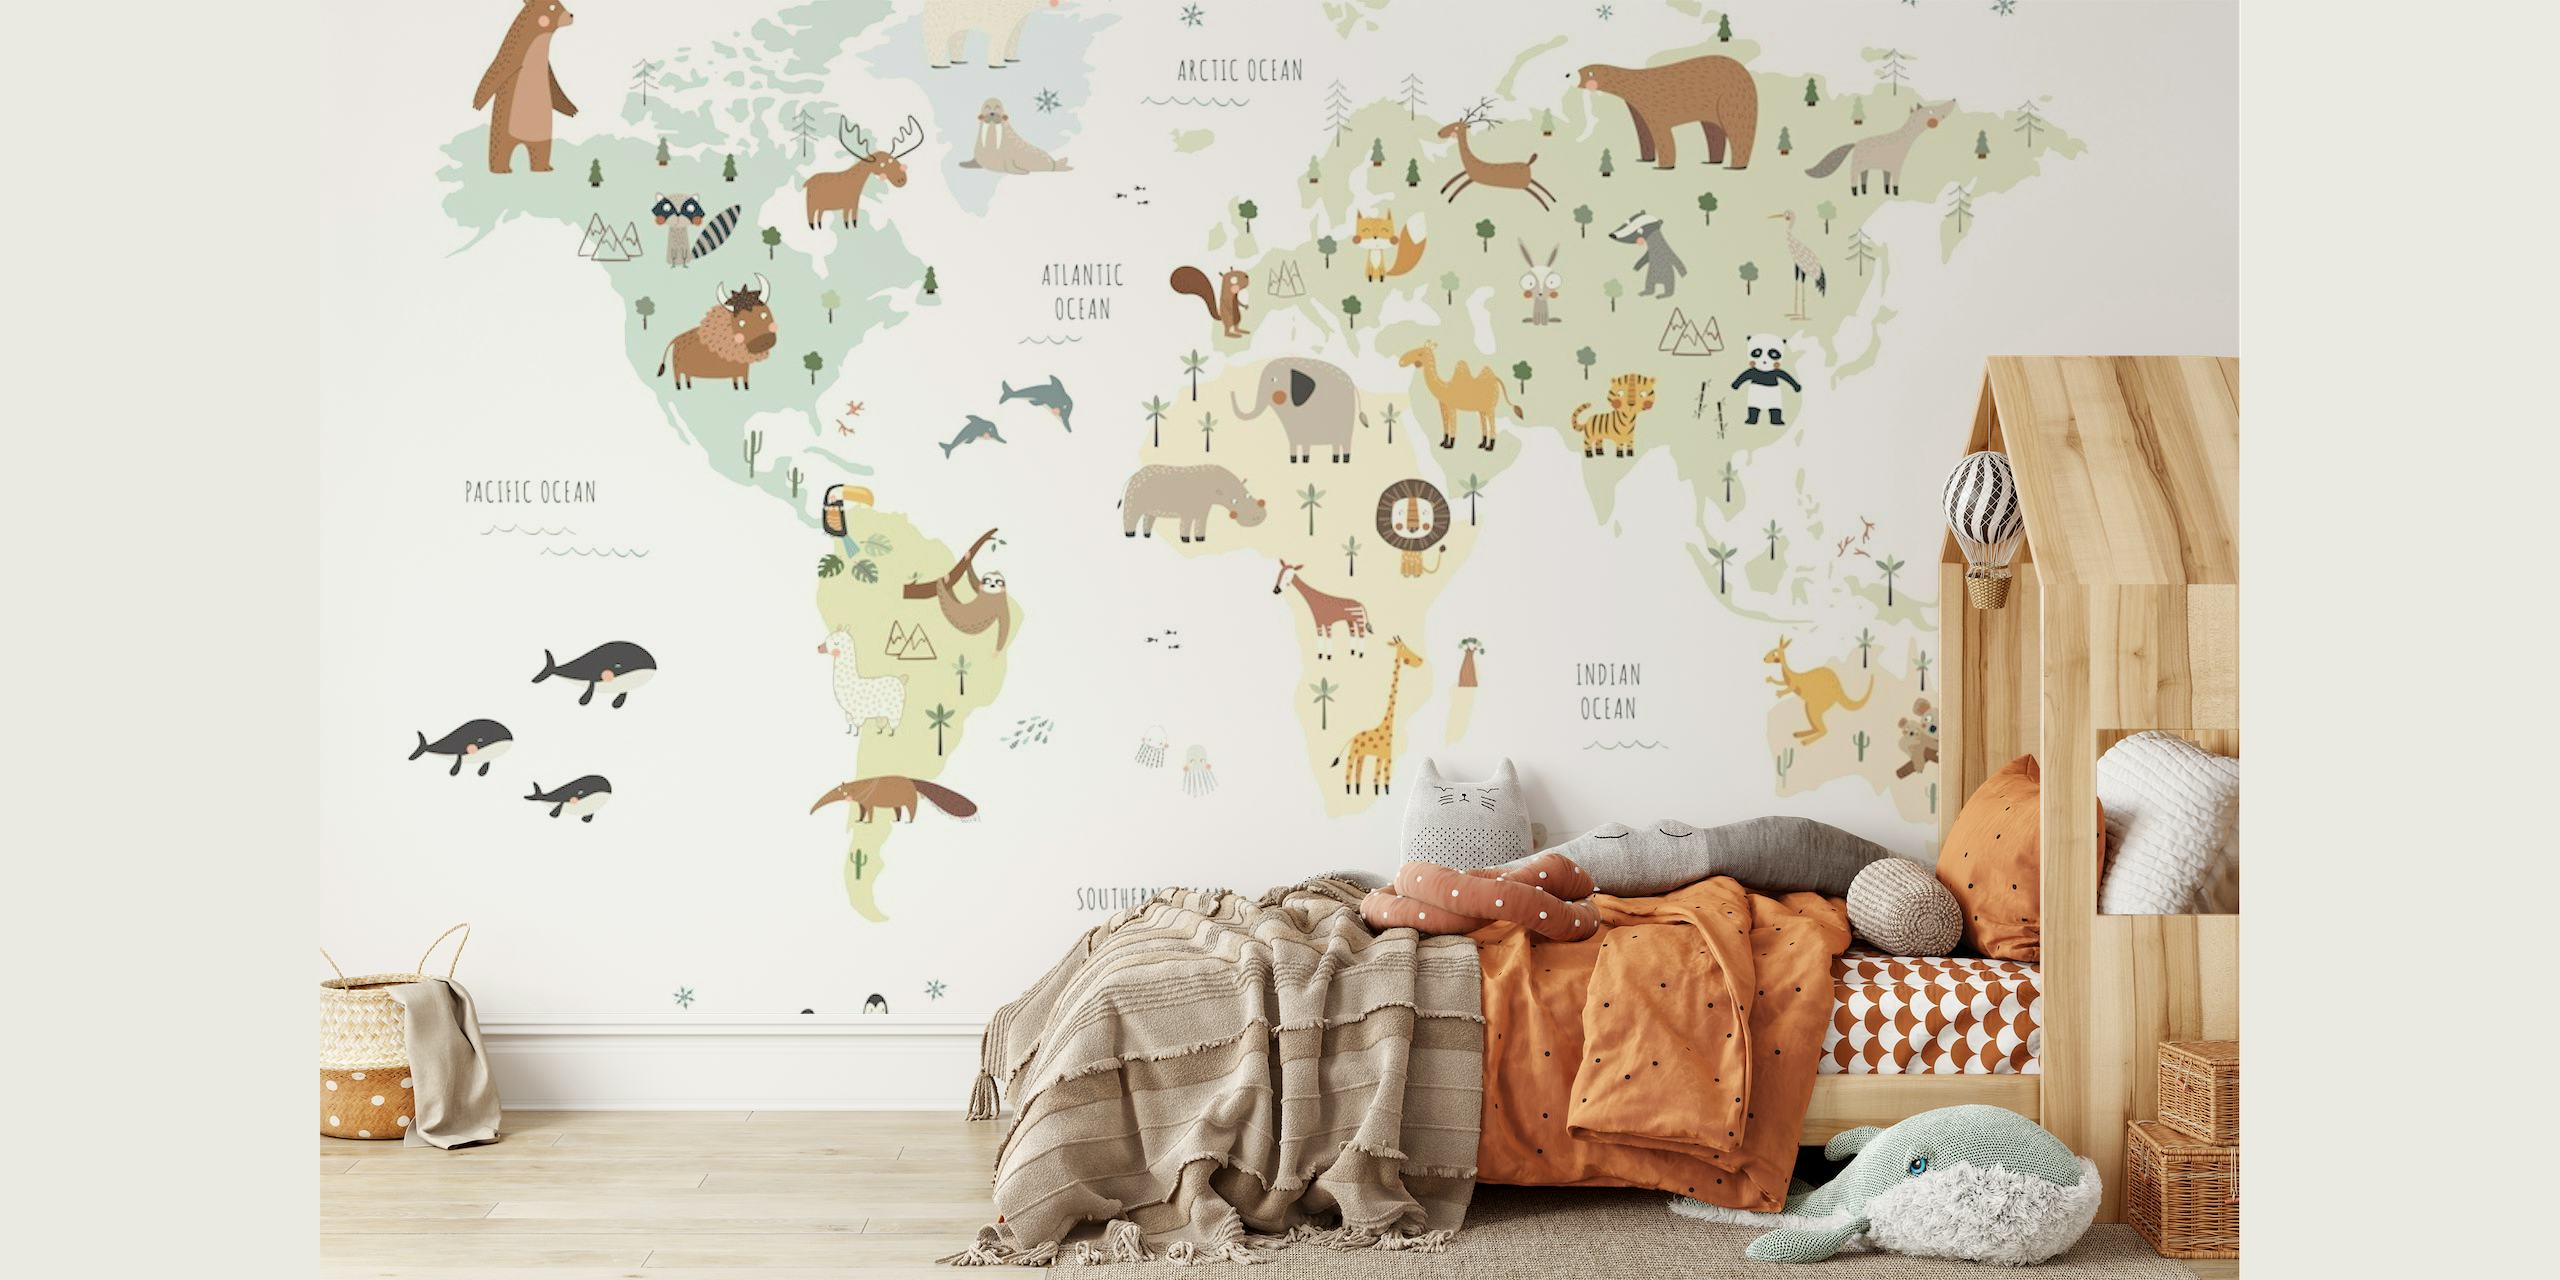 Illustreret verdenskort vægmaleri med farverige dyr, der repræsenterer forskellige regioner